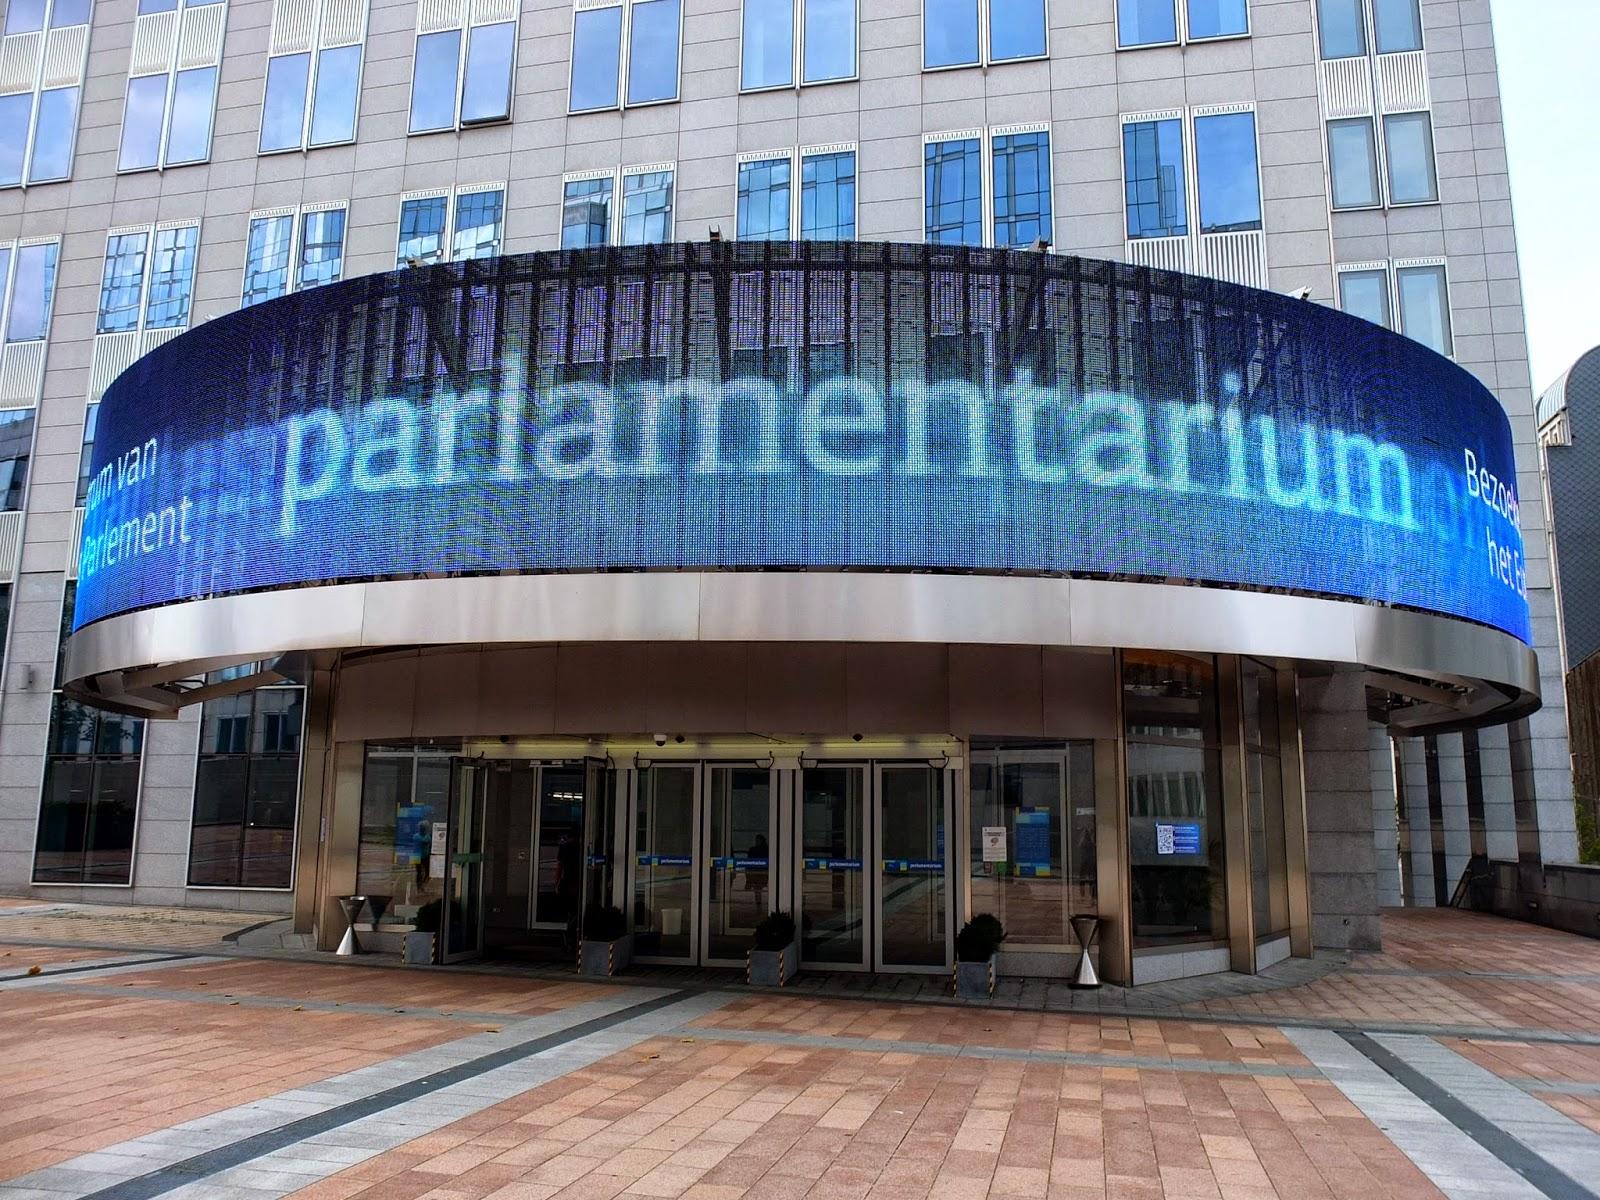 Cover image of this place Parlamentarium